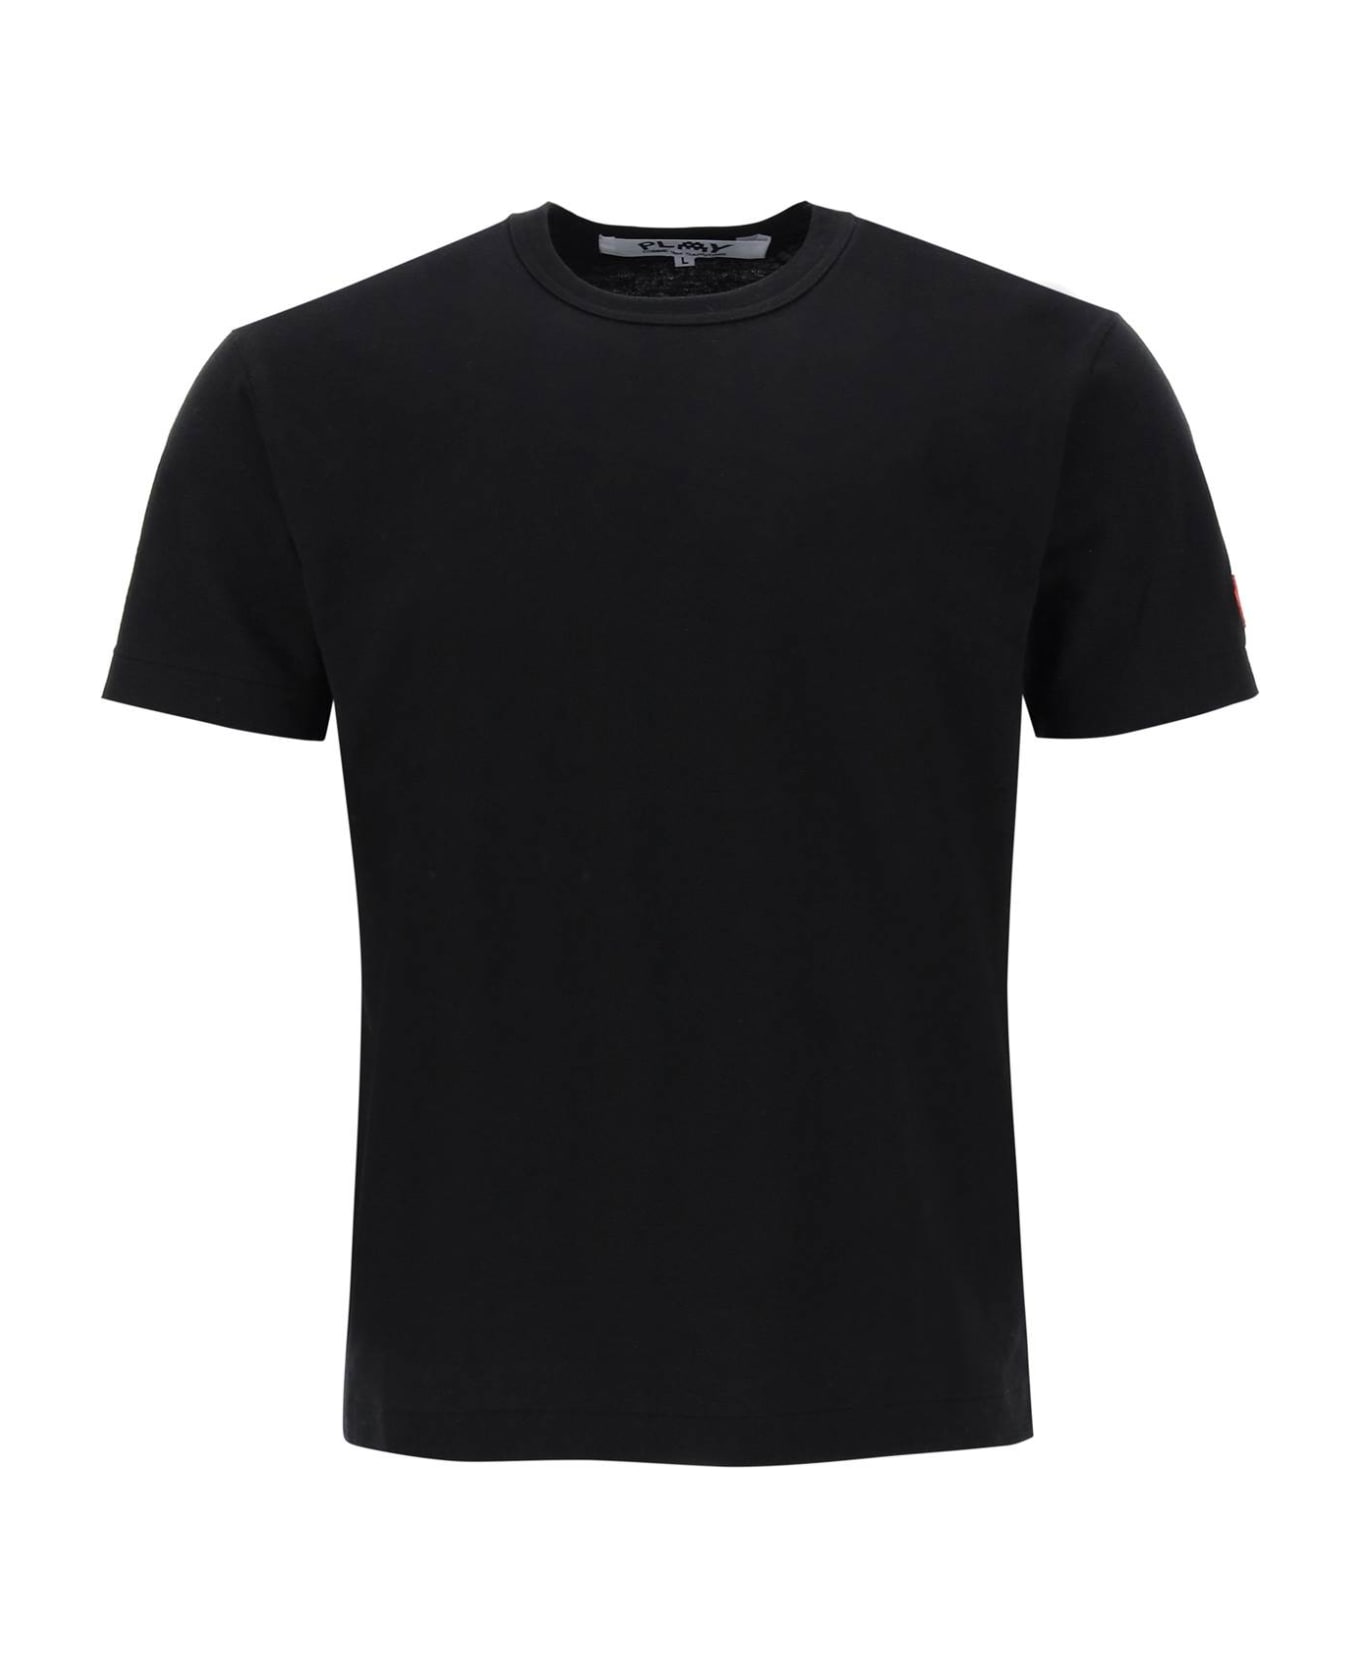 Comme des Garçons Play T-shirt With Pixel Patch - Black